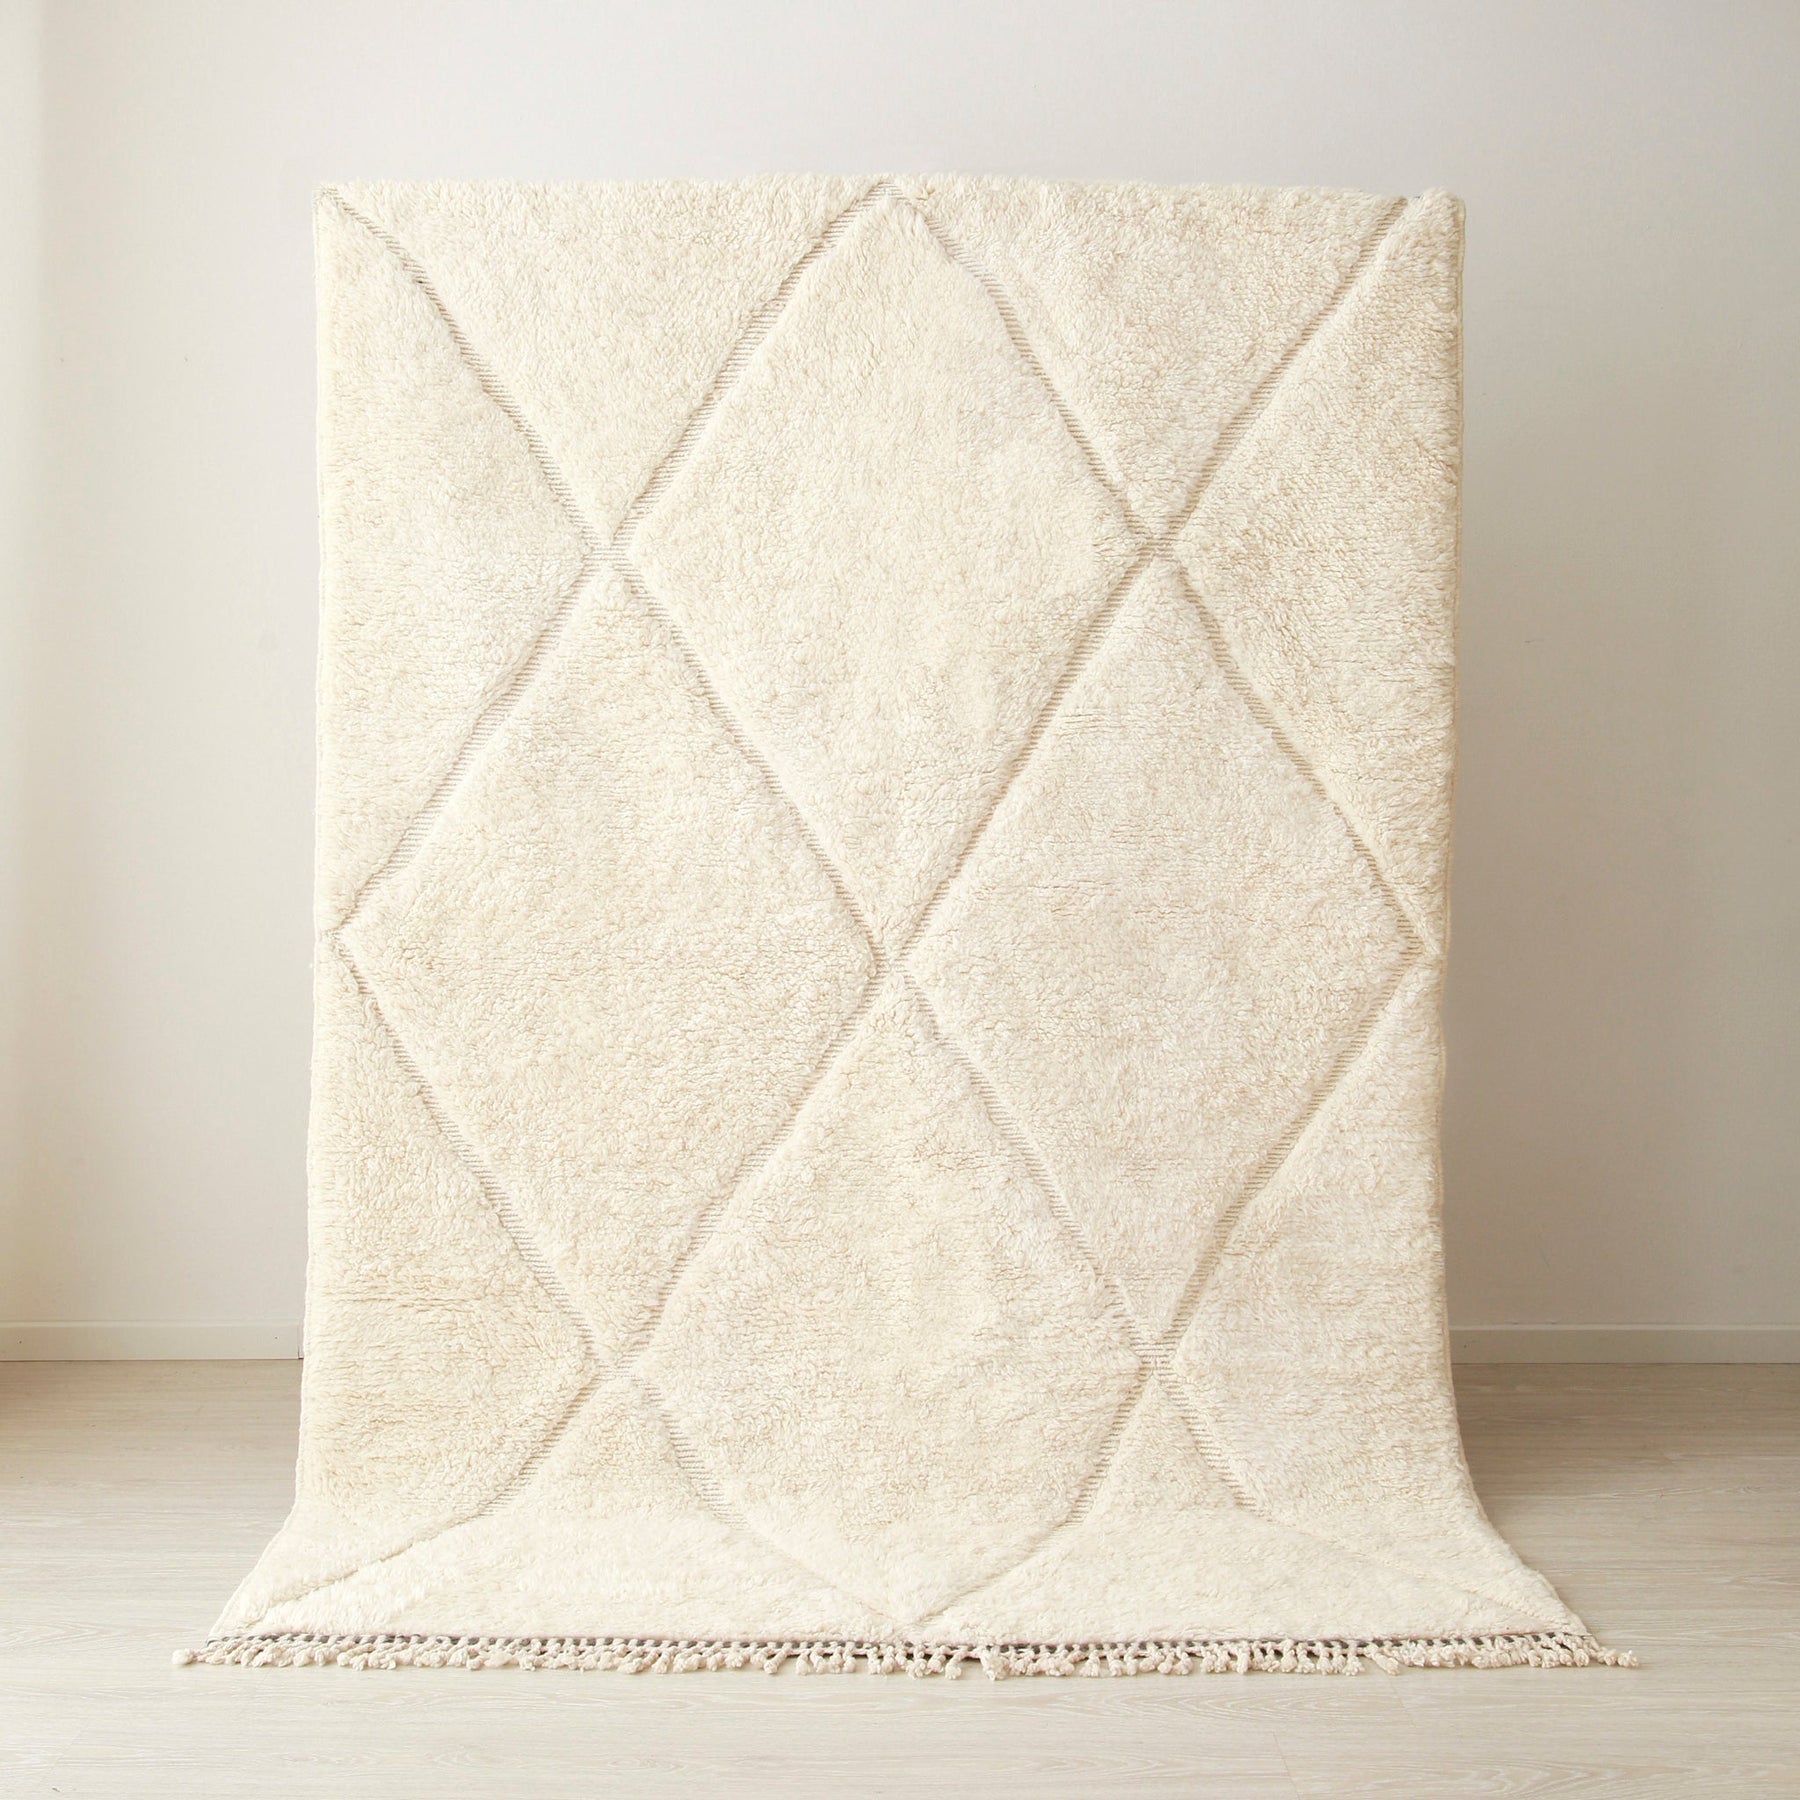 tappeto beni mrirt appeso realizzato in lana bianca con righe bianche che creano dei rombi.